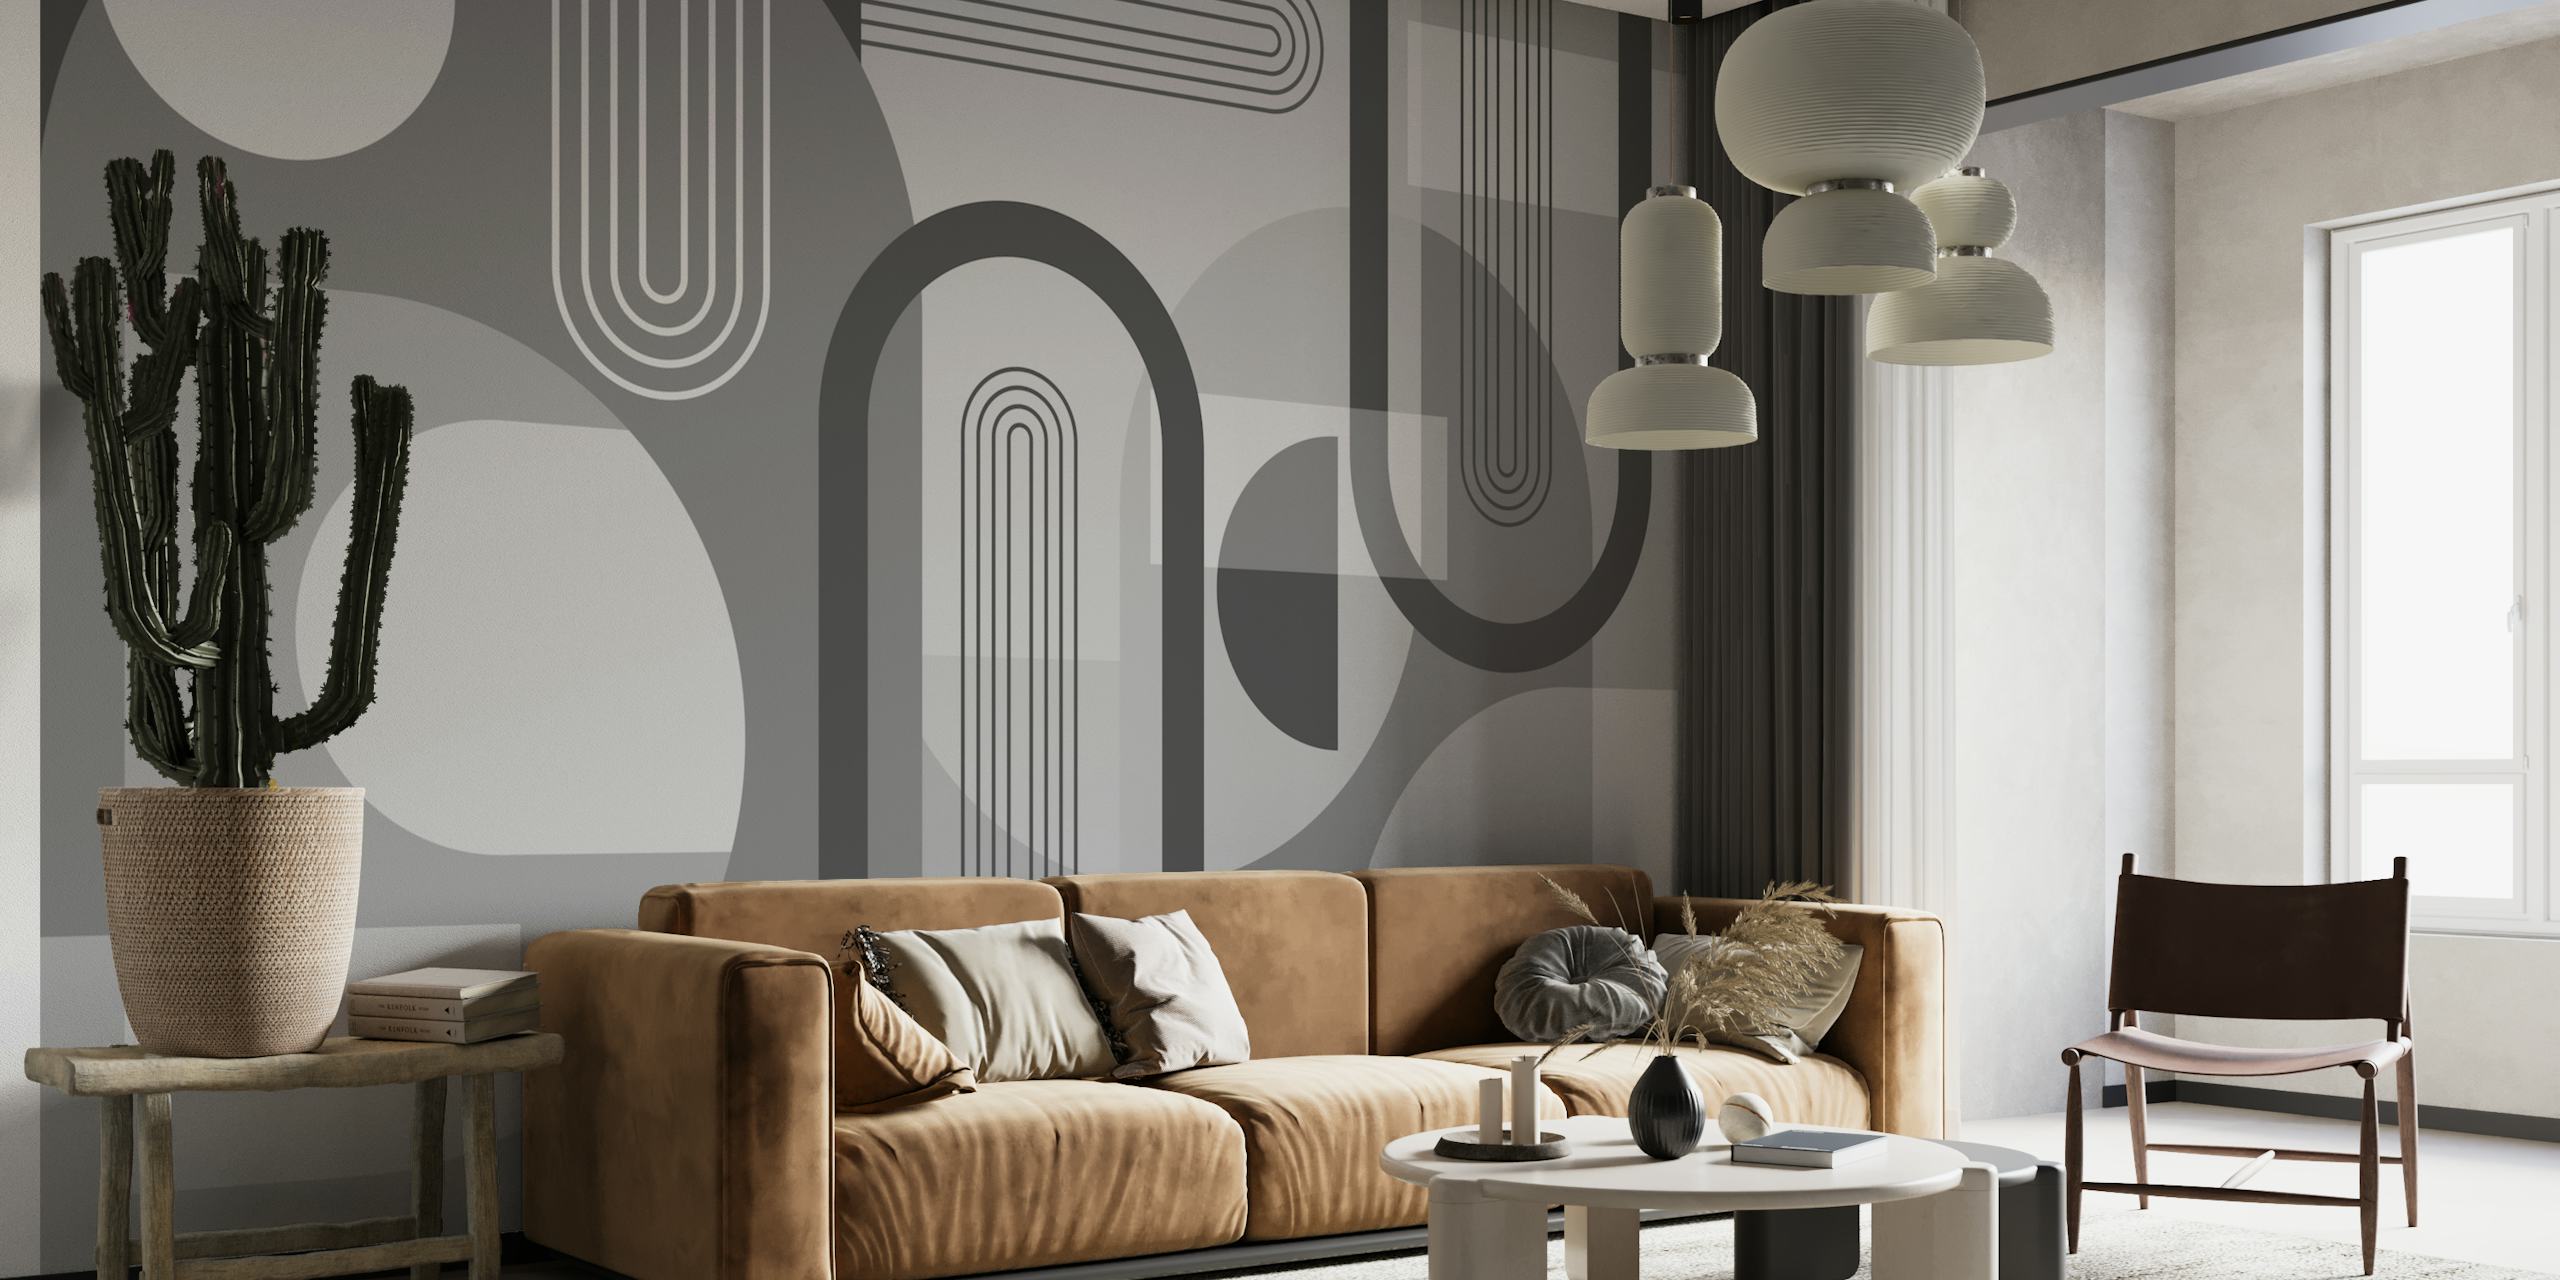 Fotomural de arcos abstractos en tonos grises para una decoración contemporánea